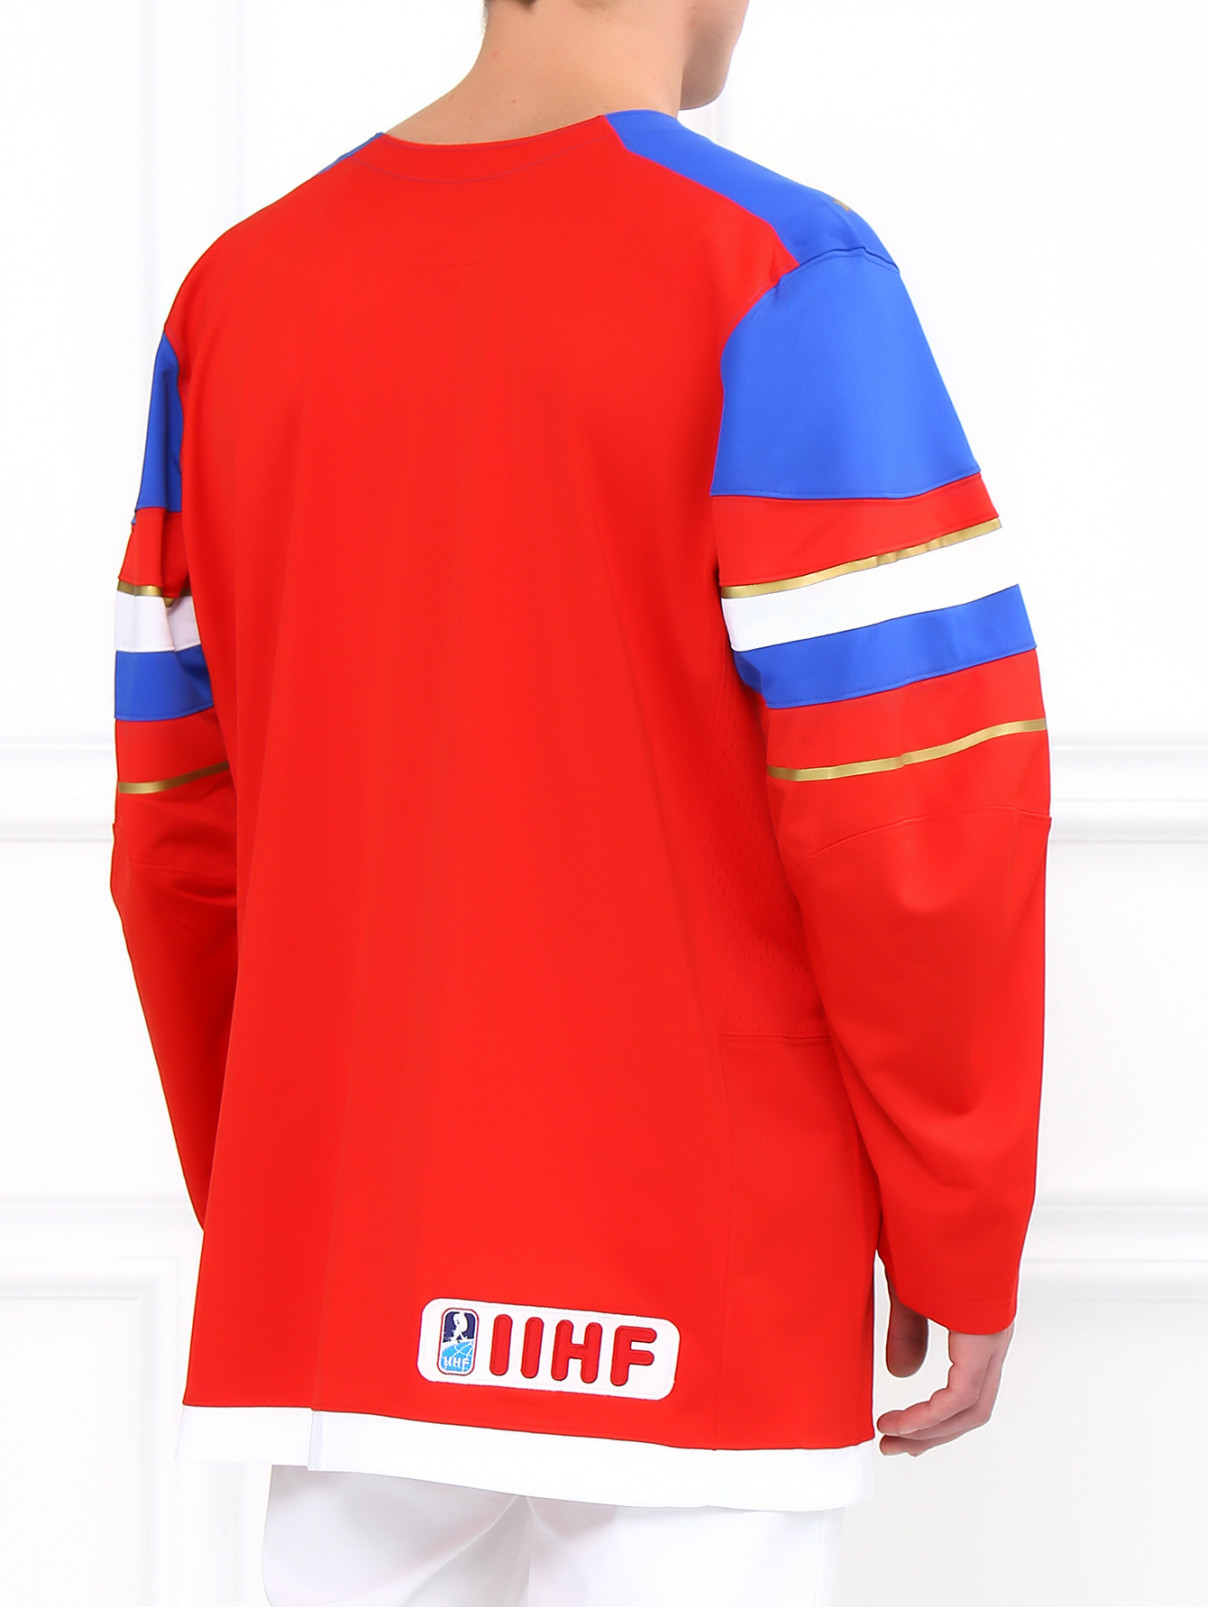 Лонгслив с принтом Sochi 2014  –  Модель Верх-Низ1  – Цвет:  Красный